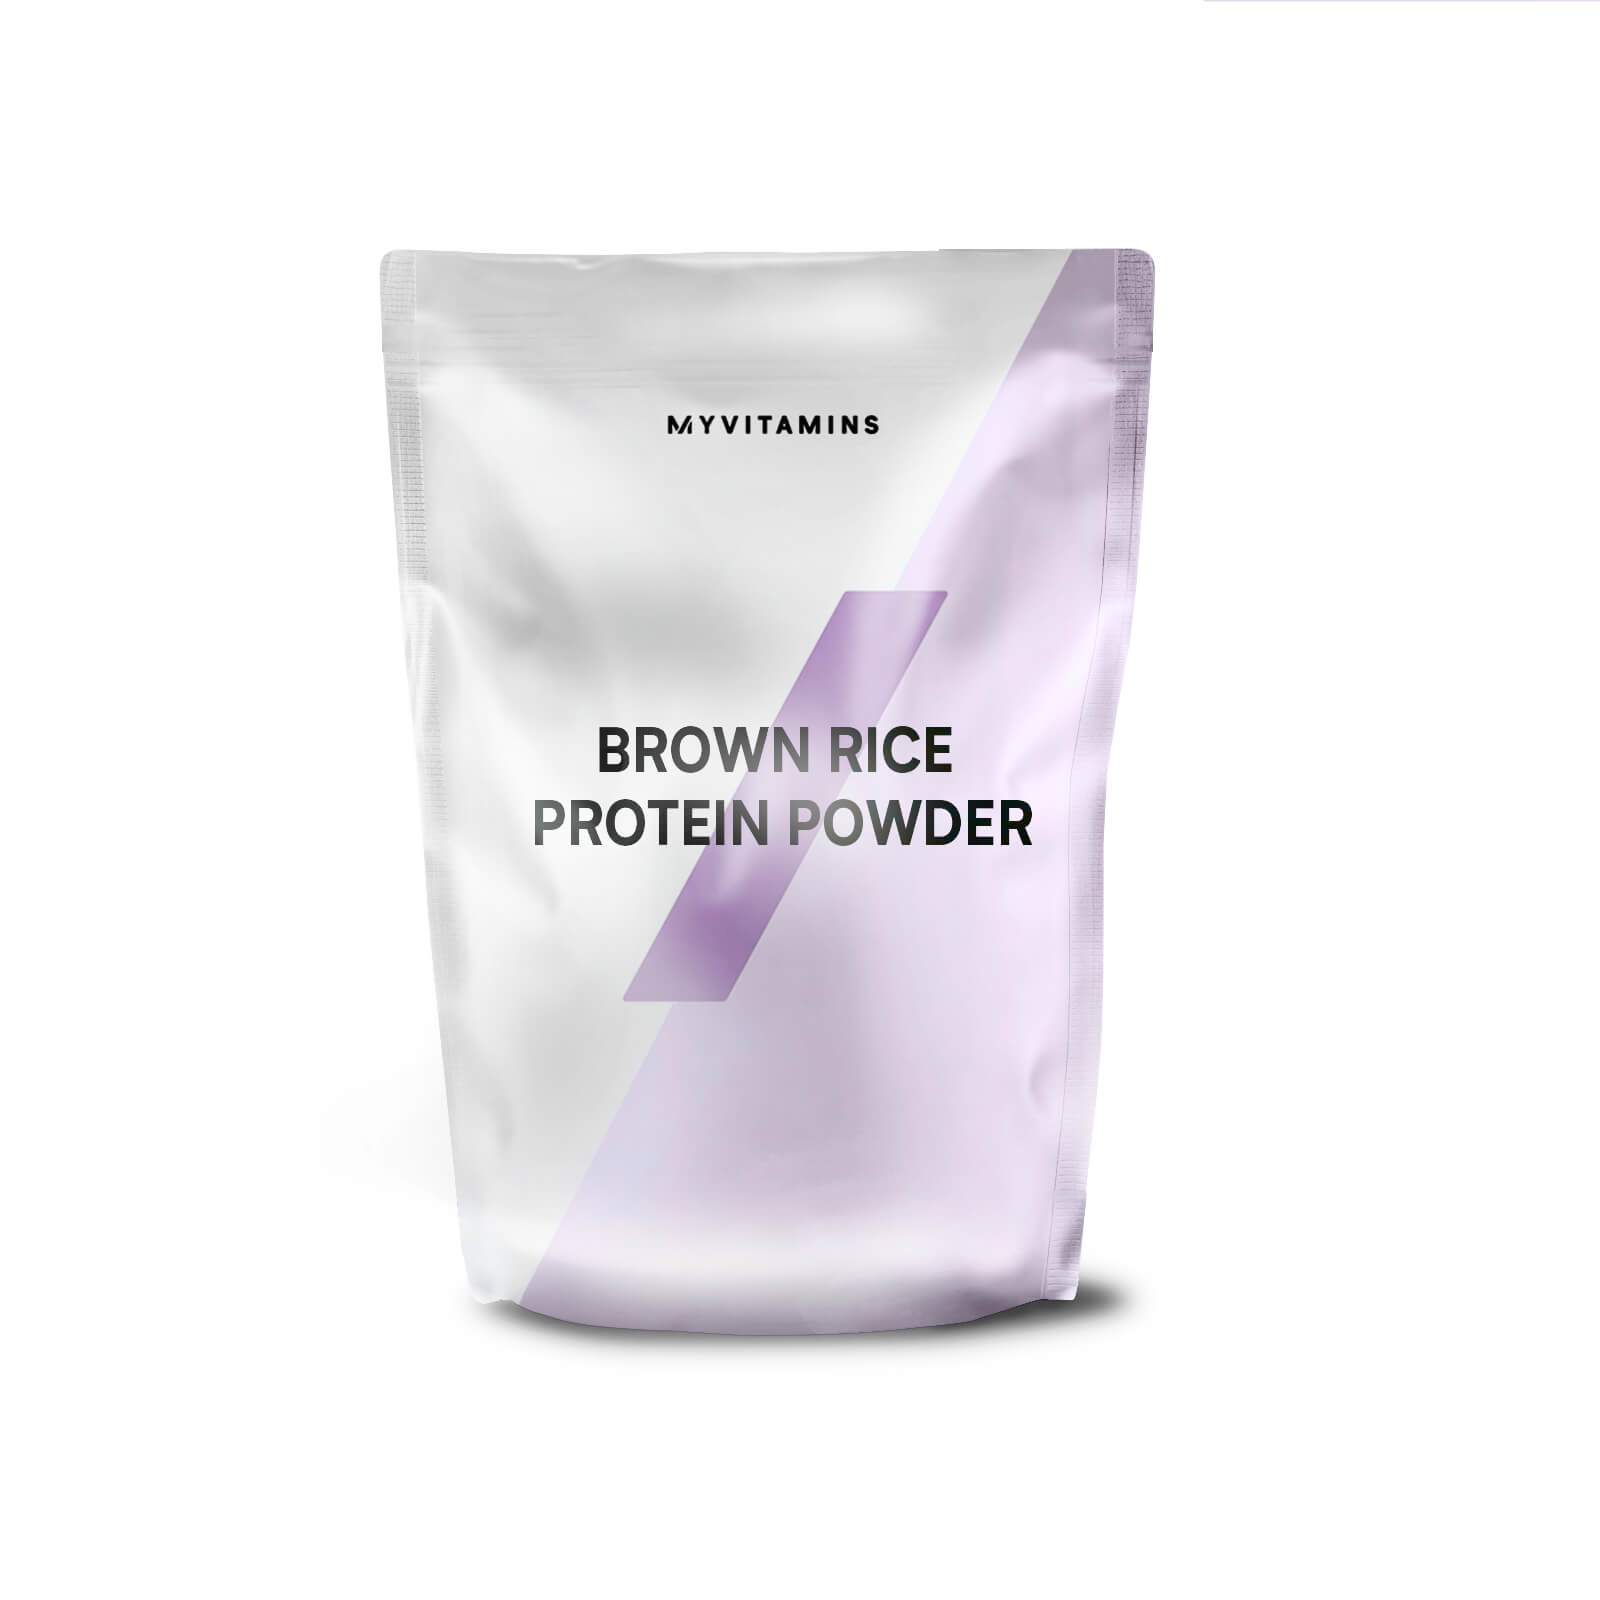 Myvitamins Brown Rice Protein Powder - 1KG - Pouch - Unflavoured